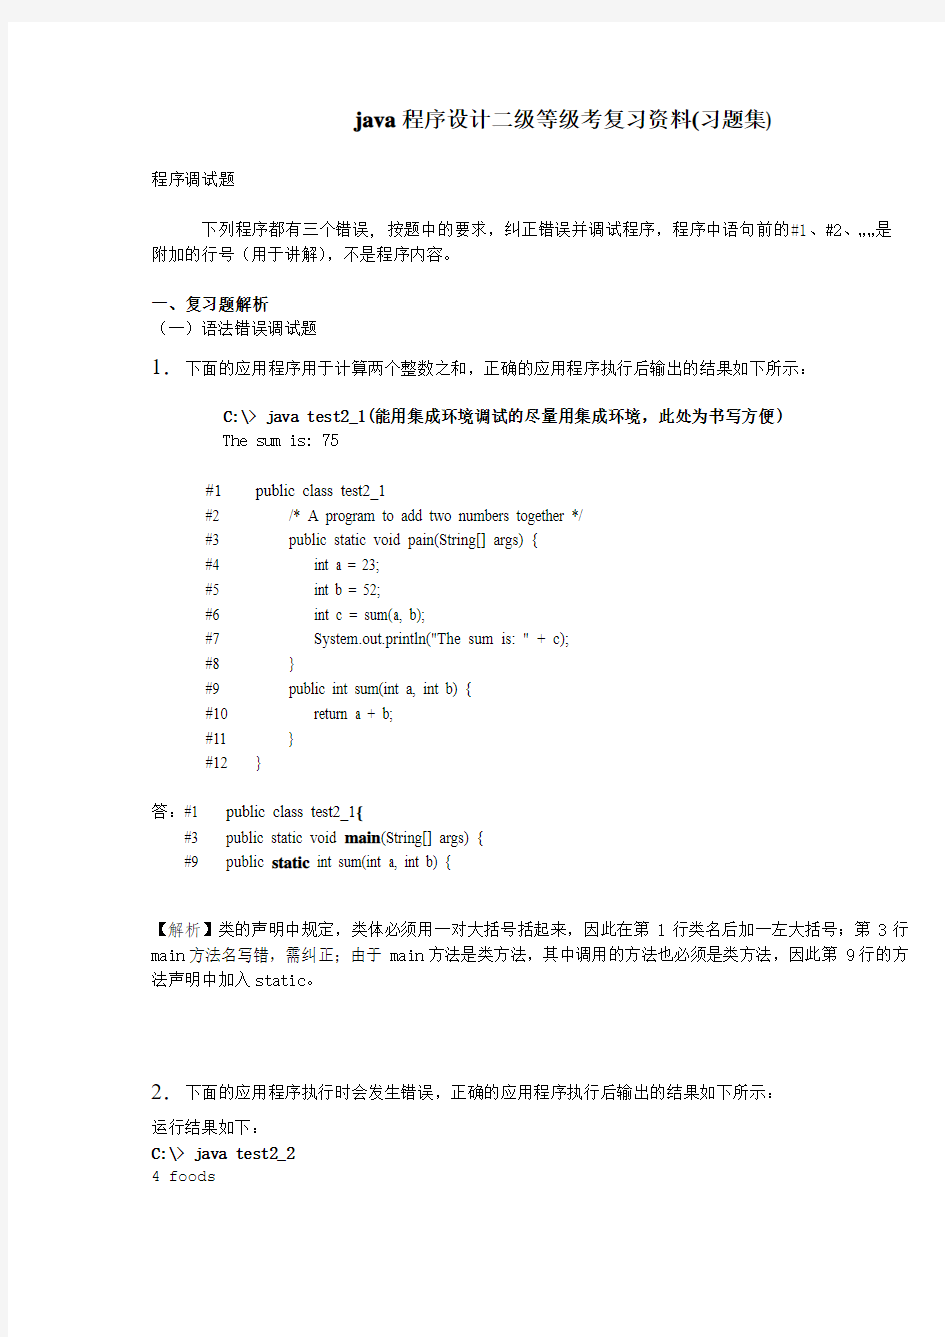 上海市计算机等级考试二级(Java)-程序调试与程序填空